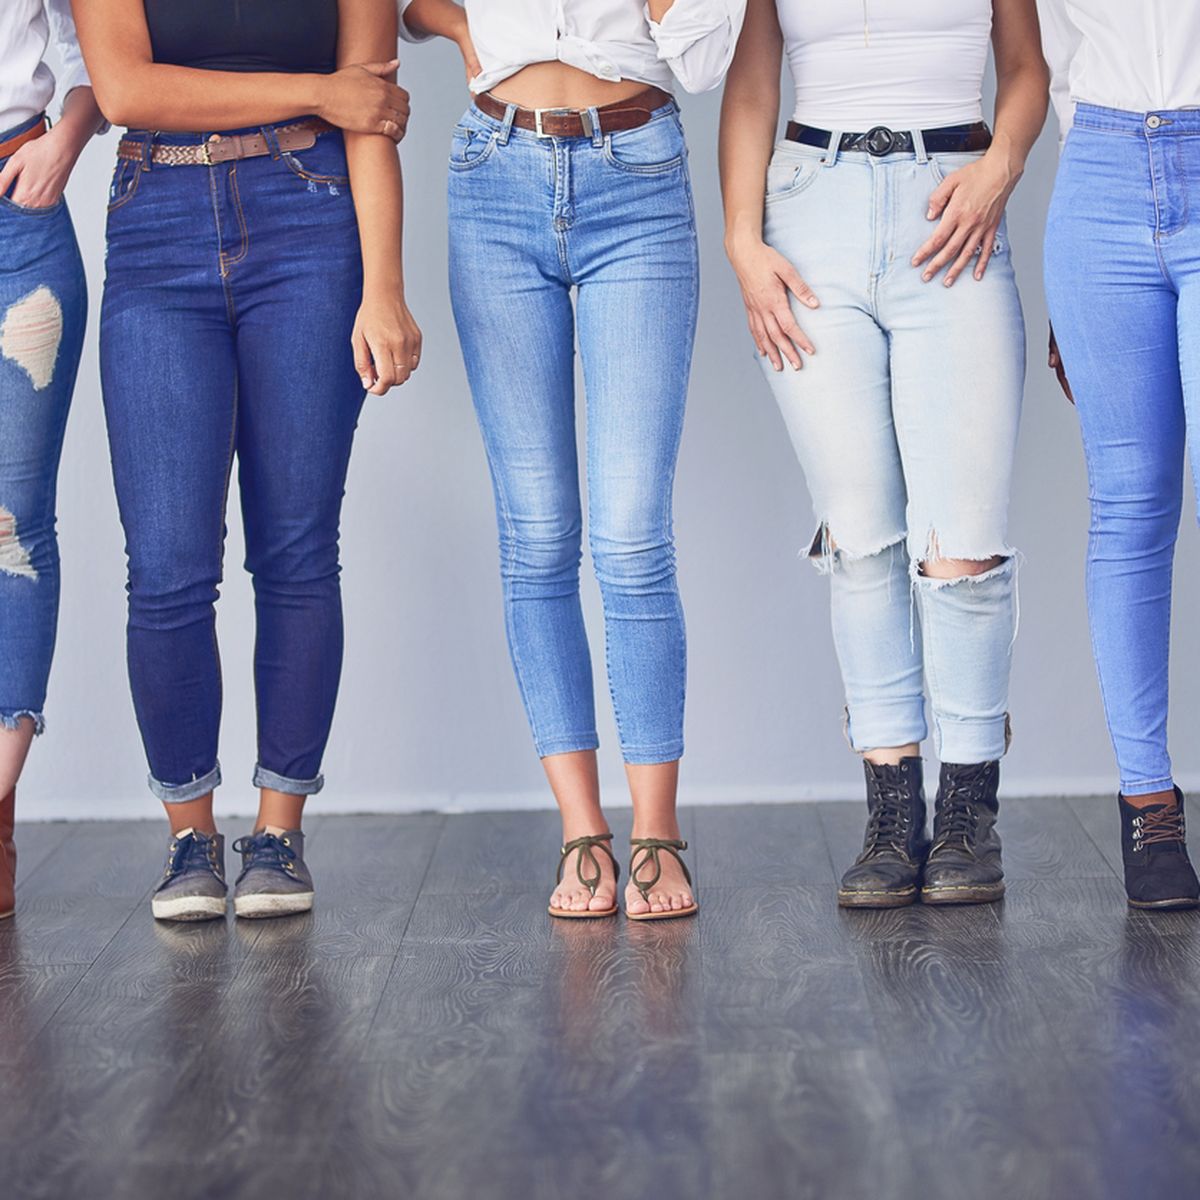 Jeans-Trends: Das sind Jeans-Neuheiten für die 2020 wichtigsten fünf